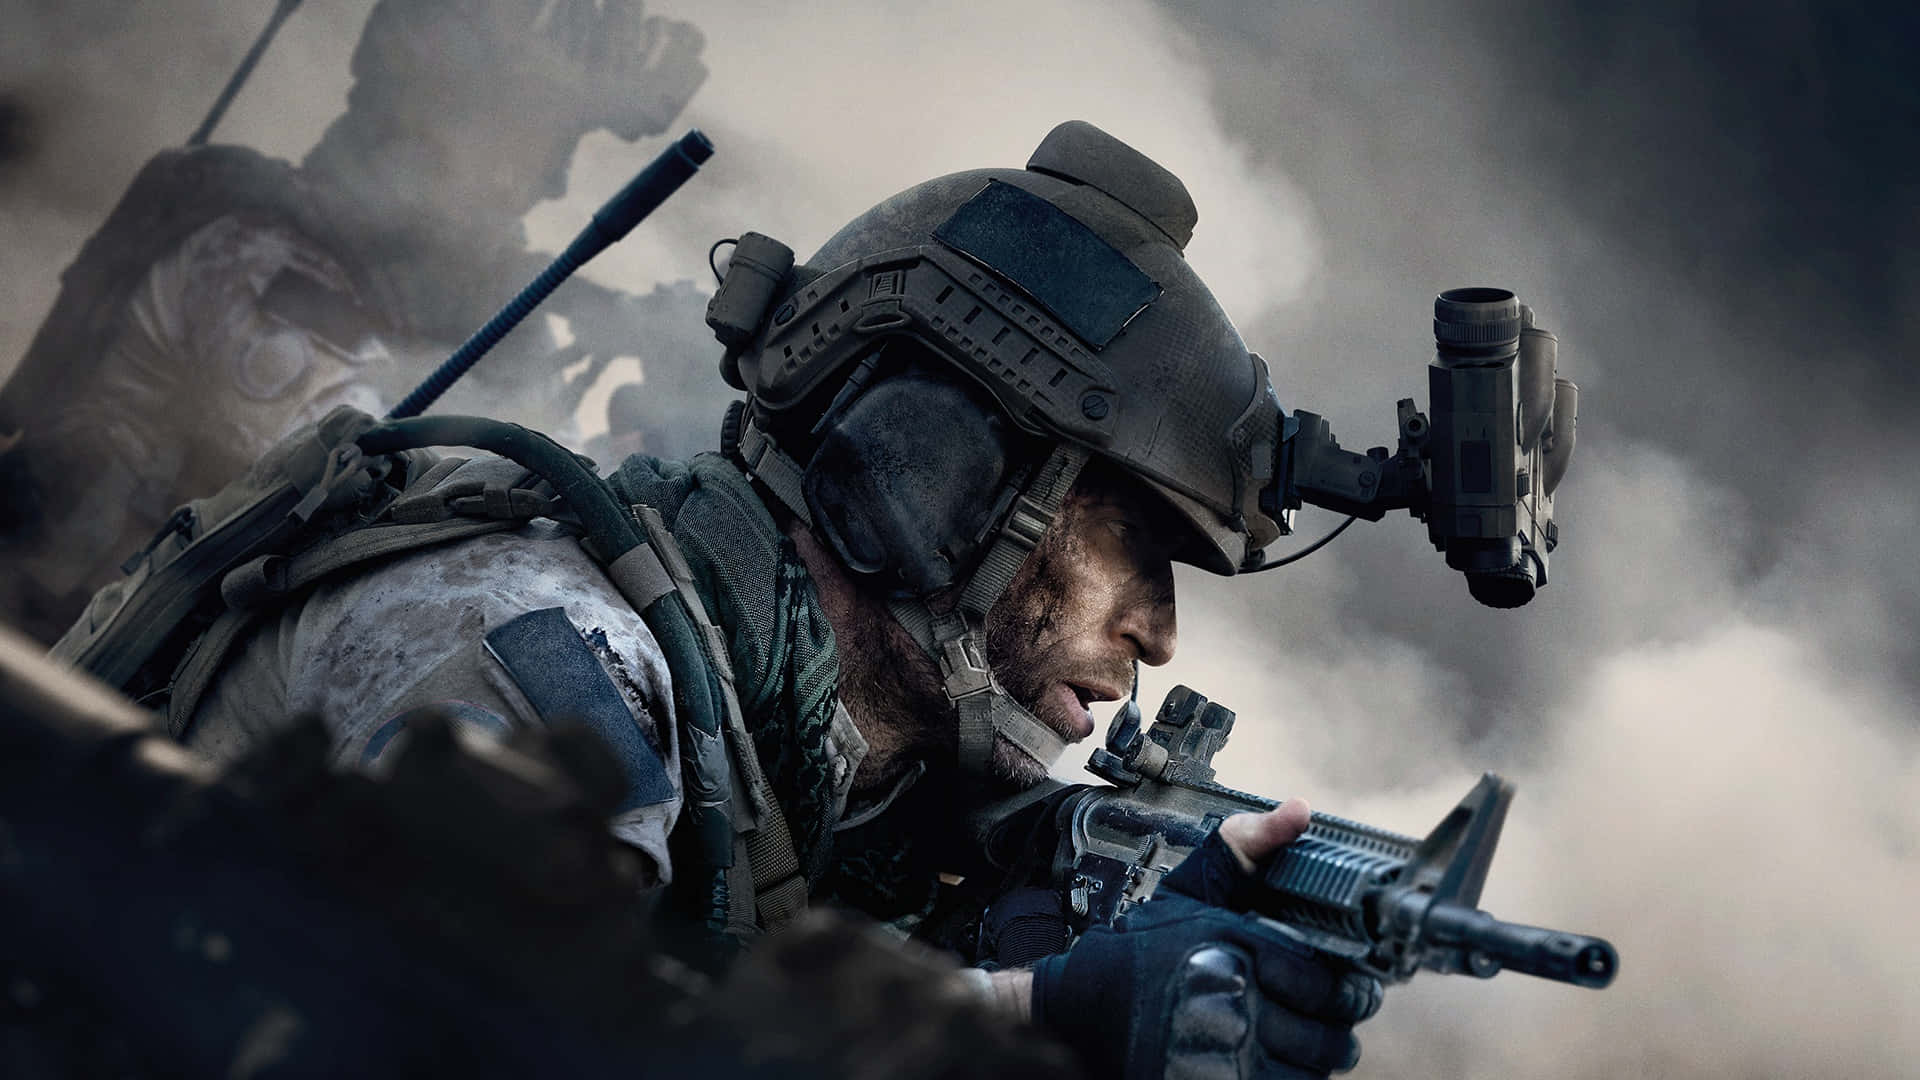 Callof Duty Modern Warfare Bakgrund